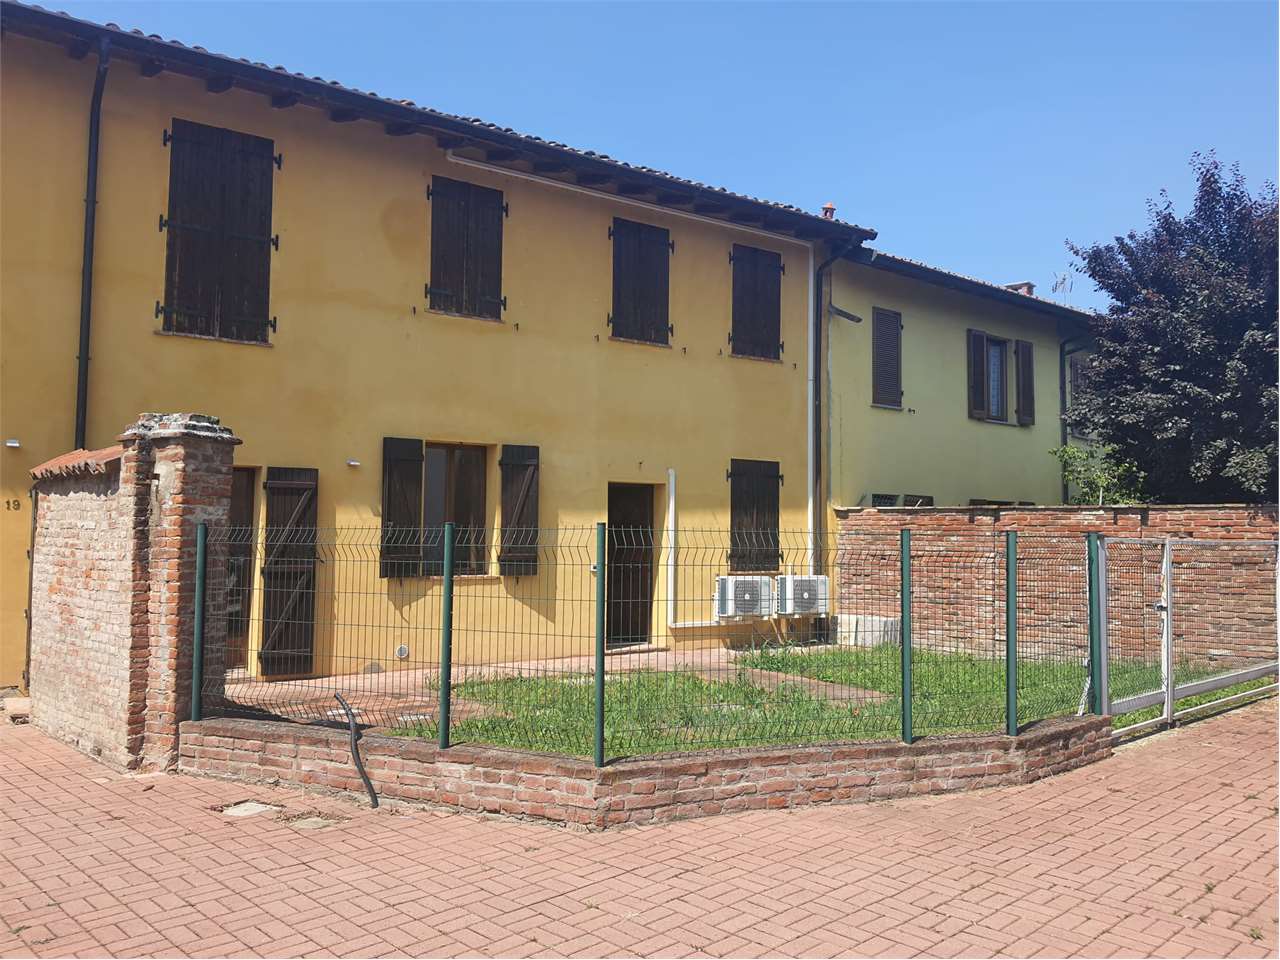 Vendita Casa Indipendente Casa/Villa Mortara Via Cantinchio 19 429120